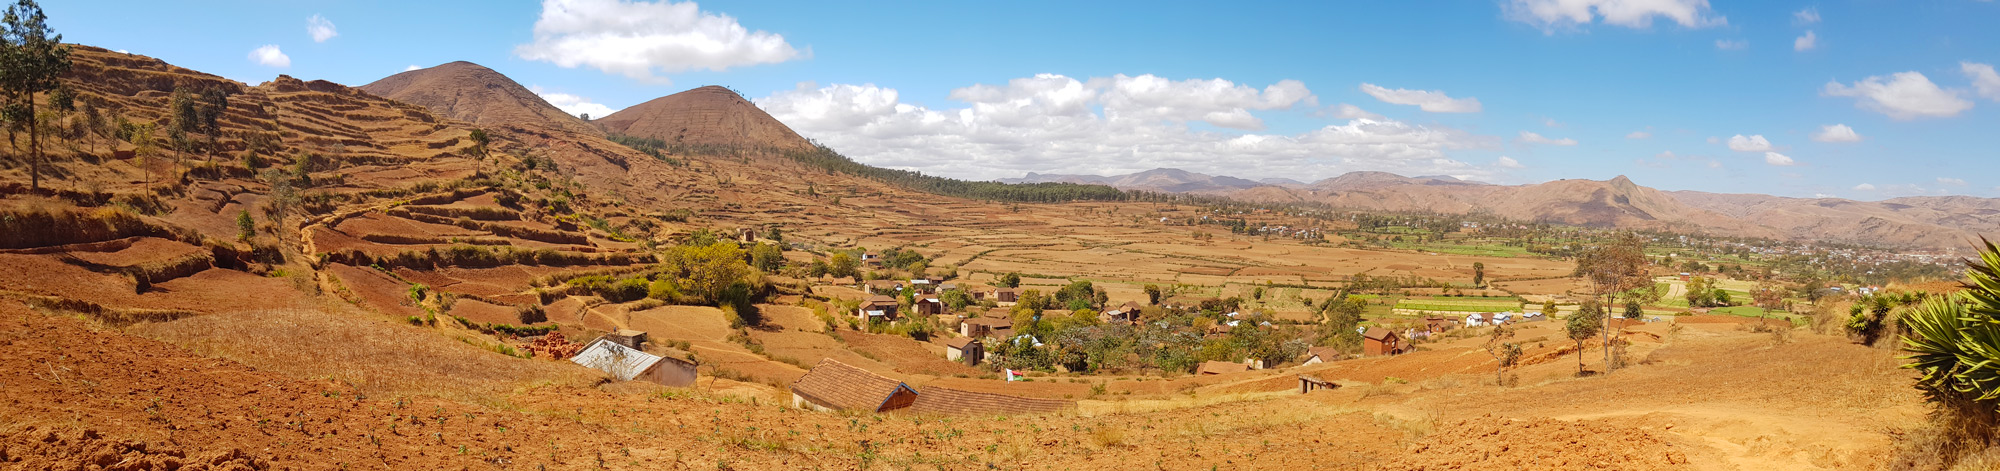 SRI-systeme de riziculture intensive à Madagascar